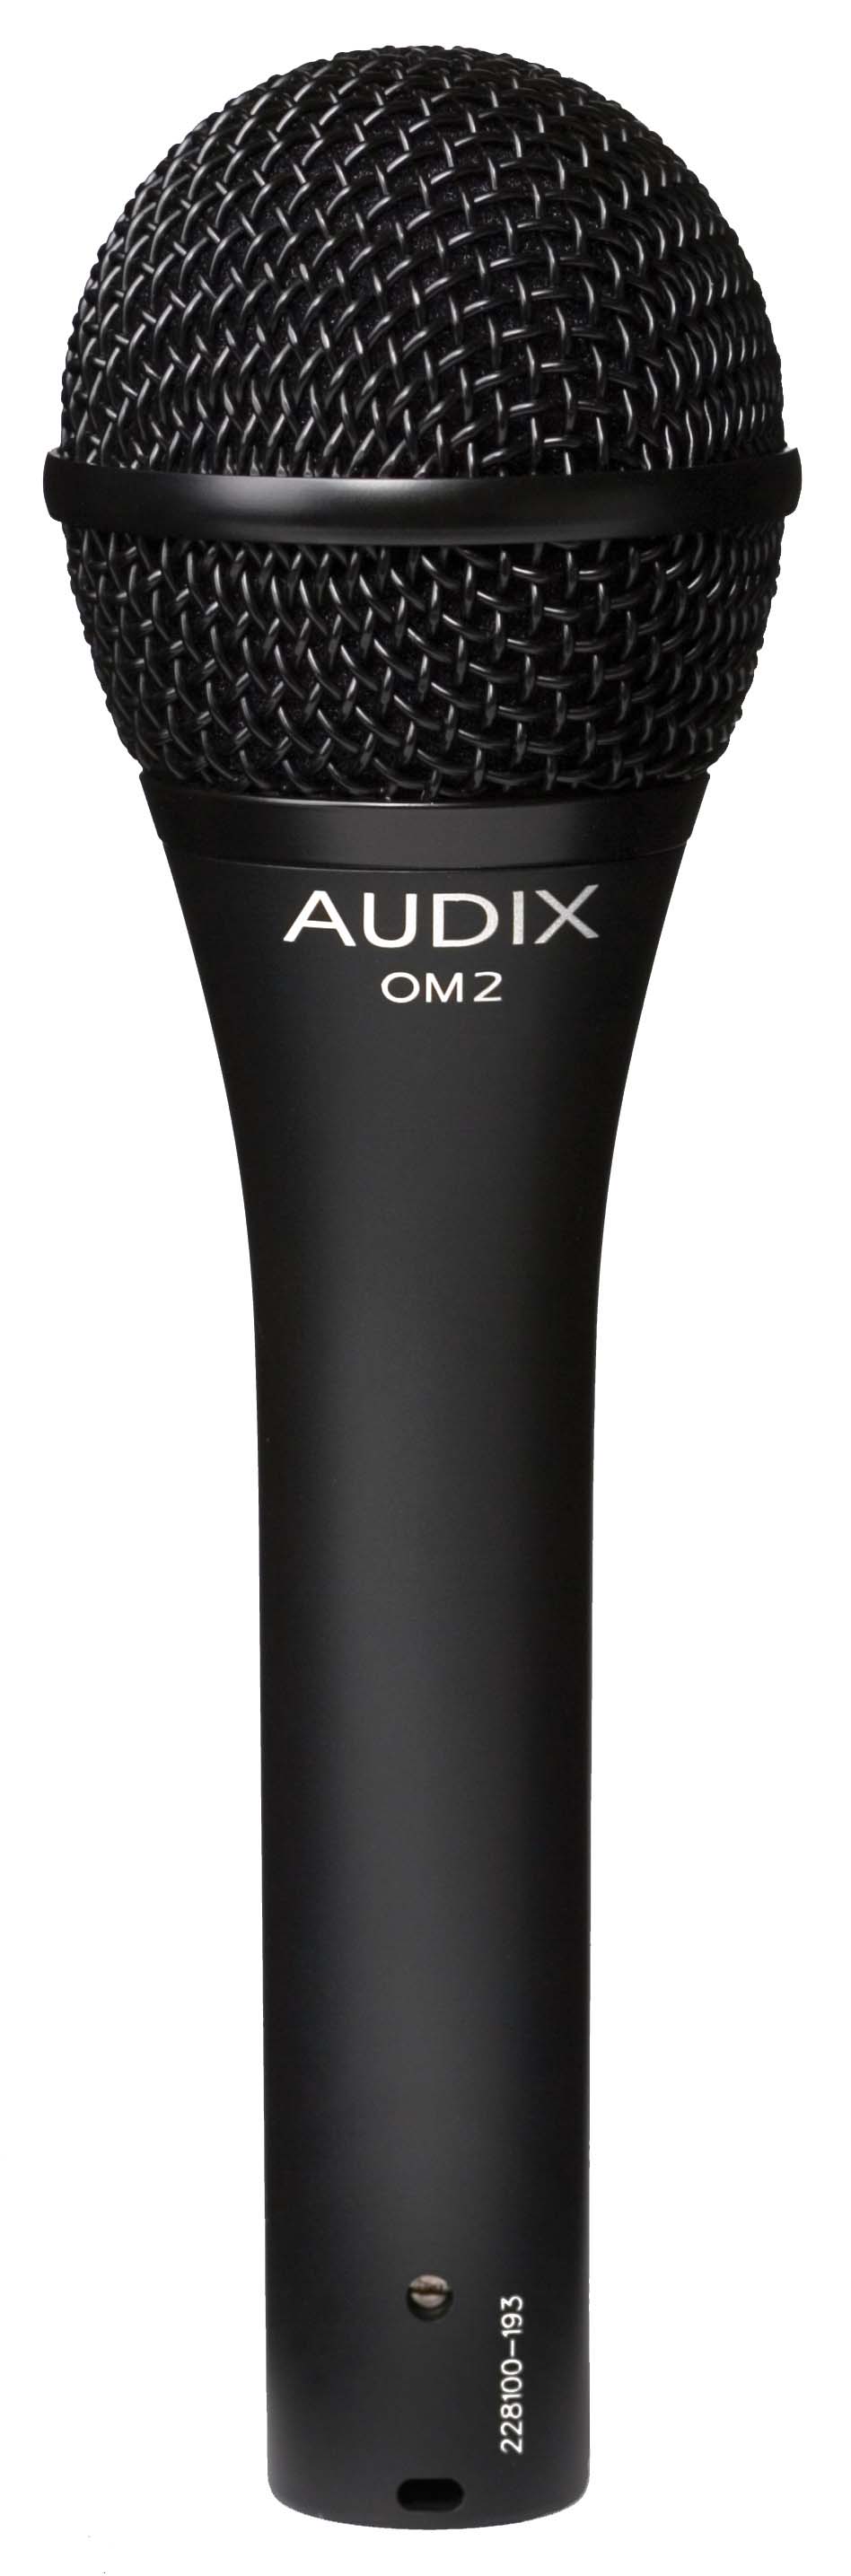 Ручные микрофоны AUDIX OM2 ручные микрофоны audix vx10